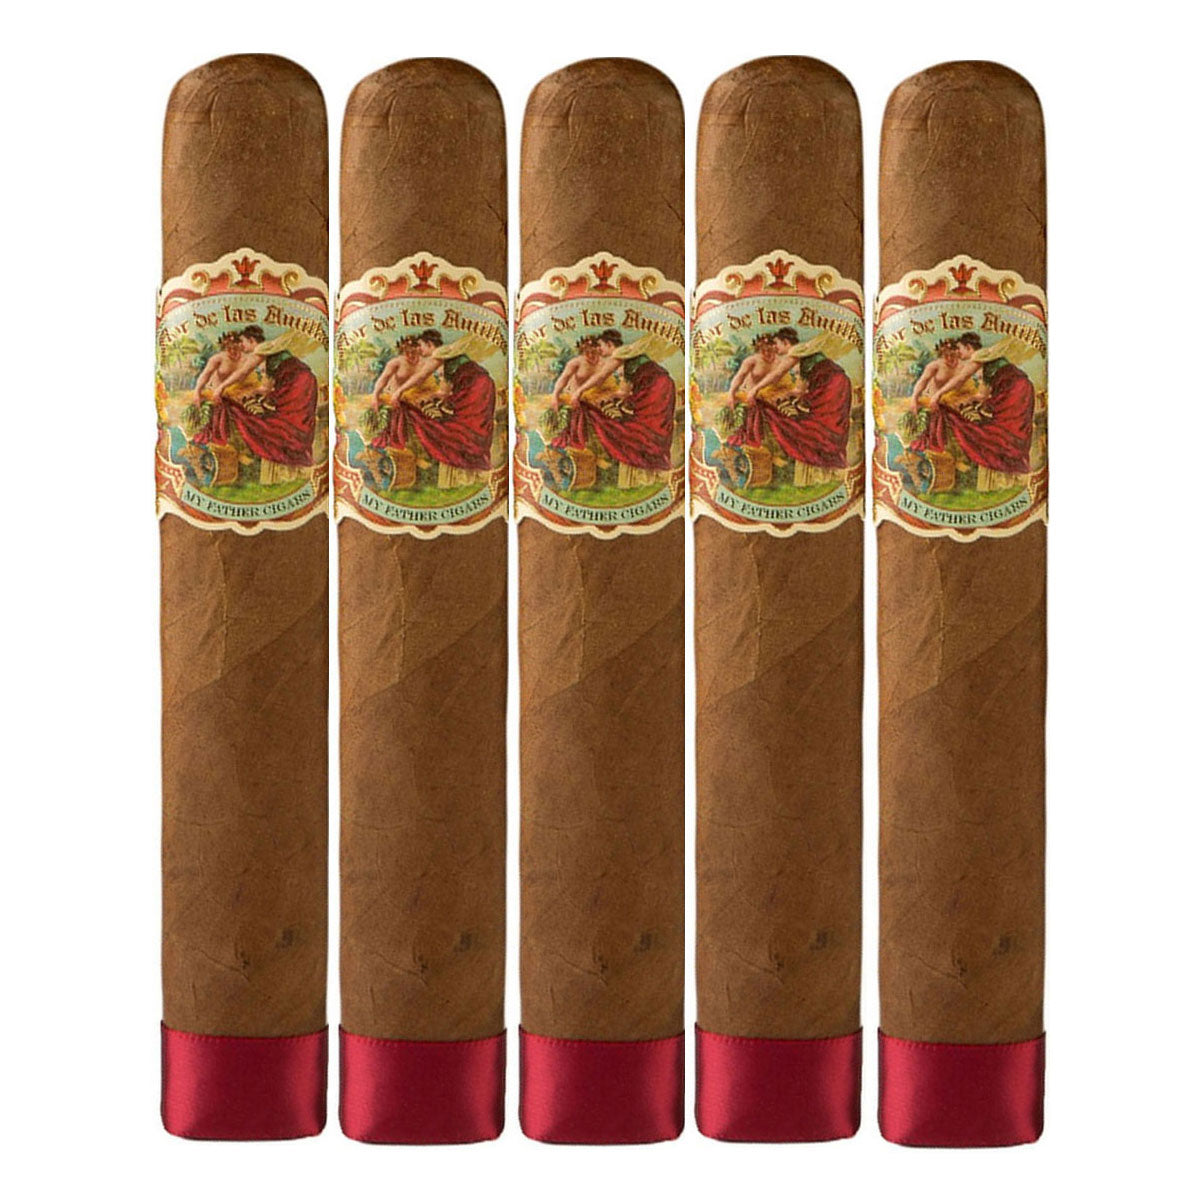 Flor de Las Antillas Toro Grande Cigars